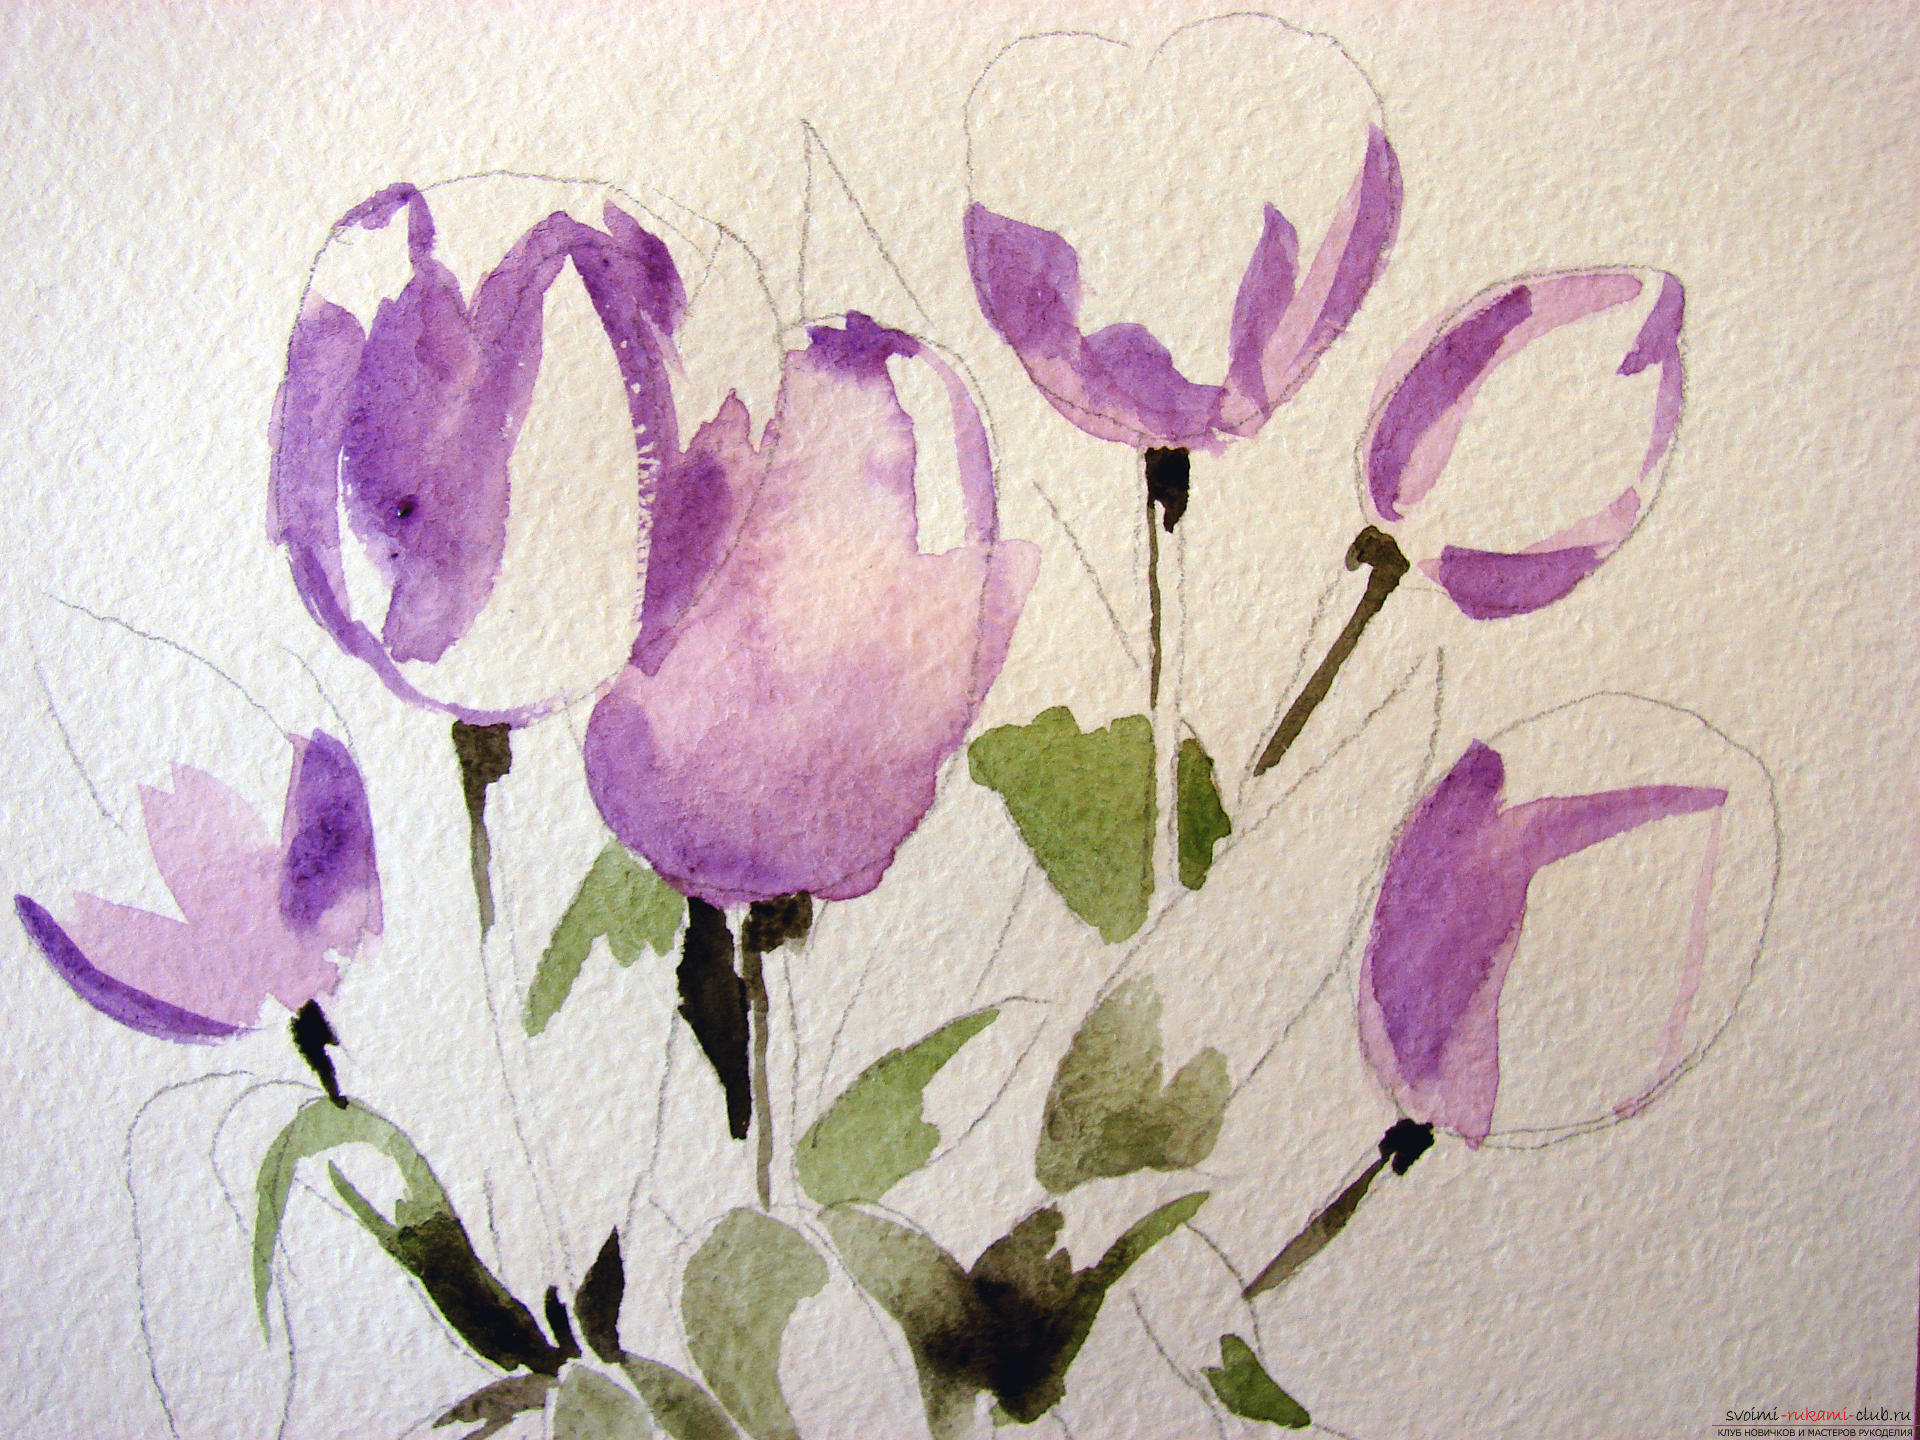 Мастер-класс по рисованию с фото научит как нарисовать цветы, подробно описав как рисуются тюльпаны поэтапно.. Фото №5